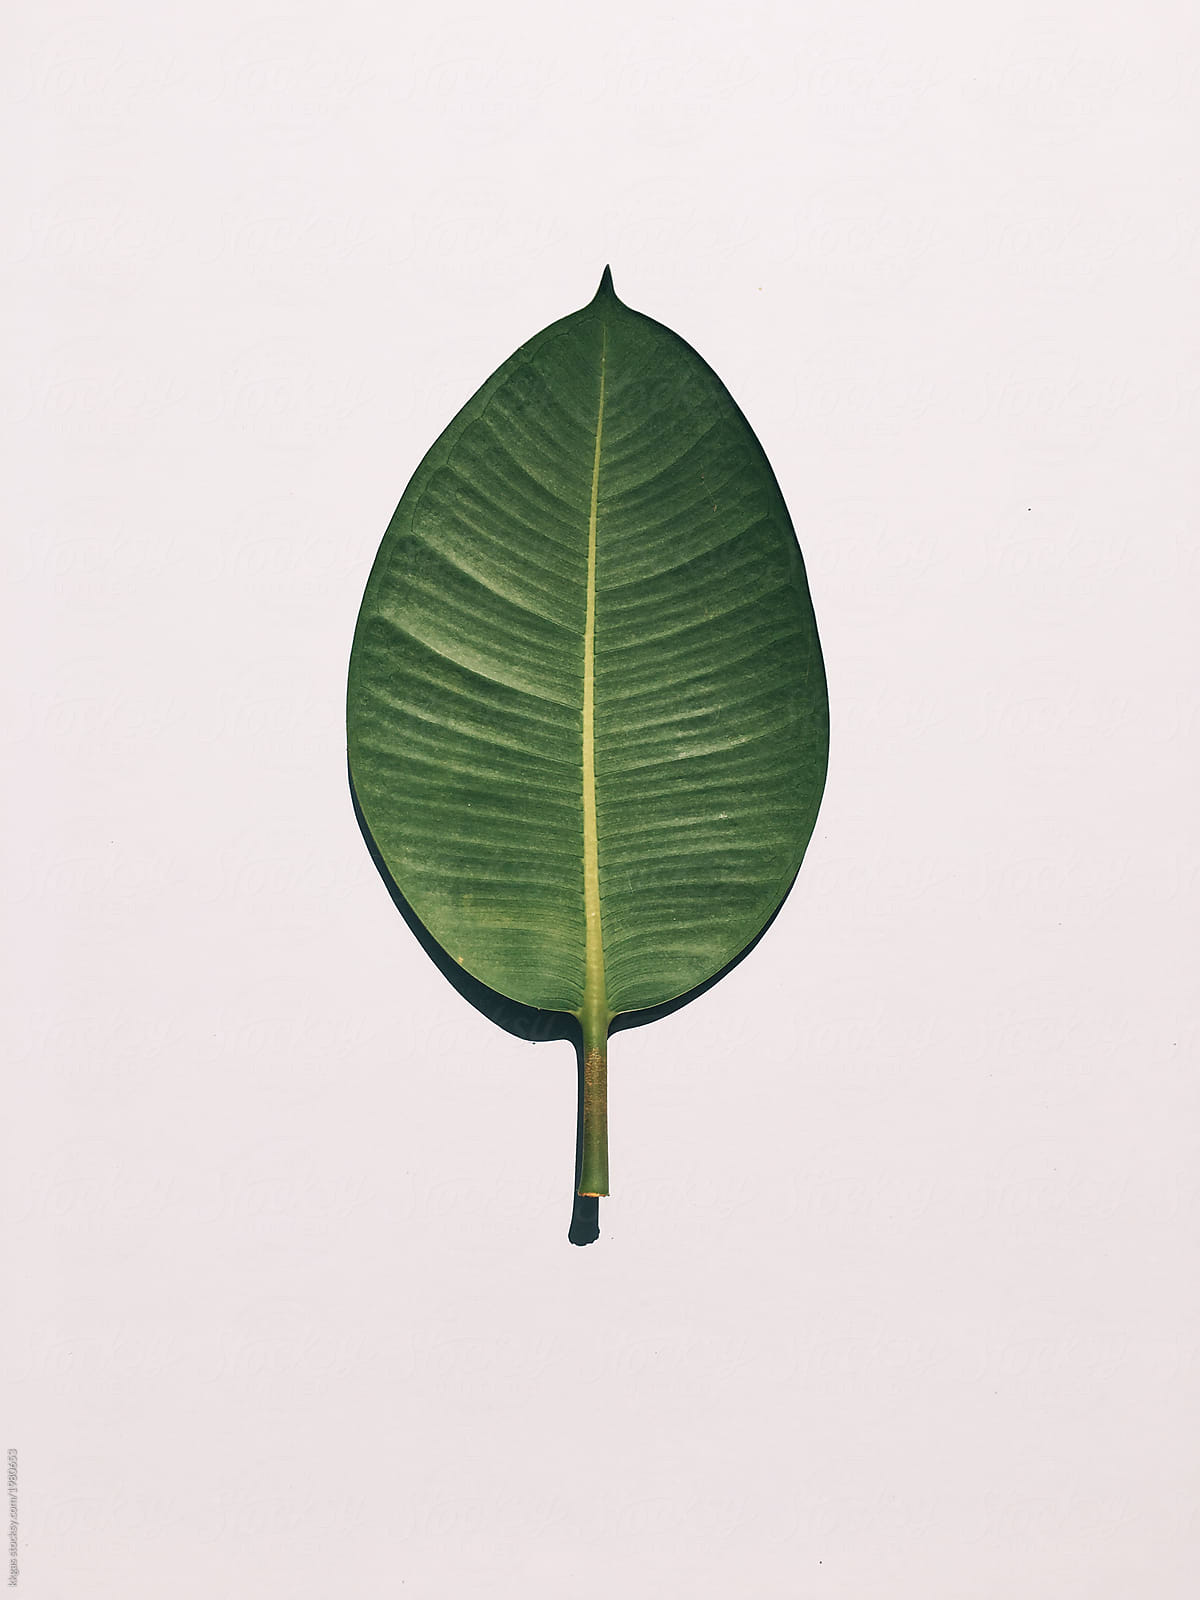 Large leaf with hard light